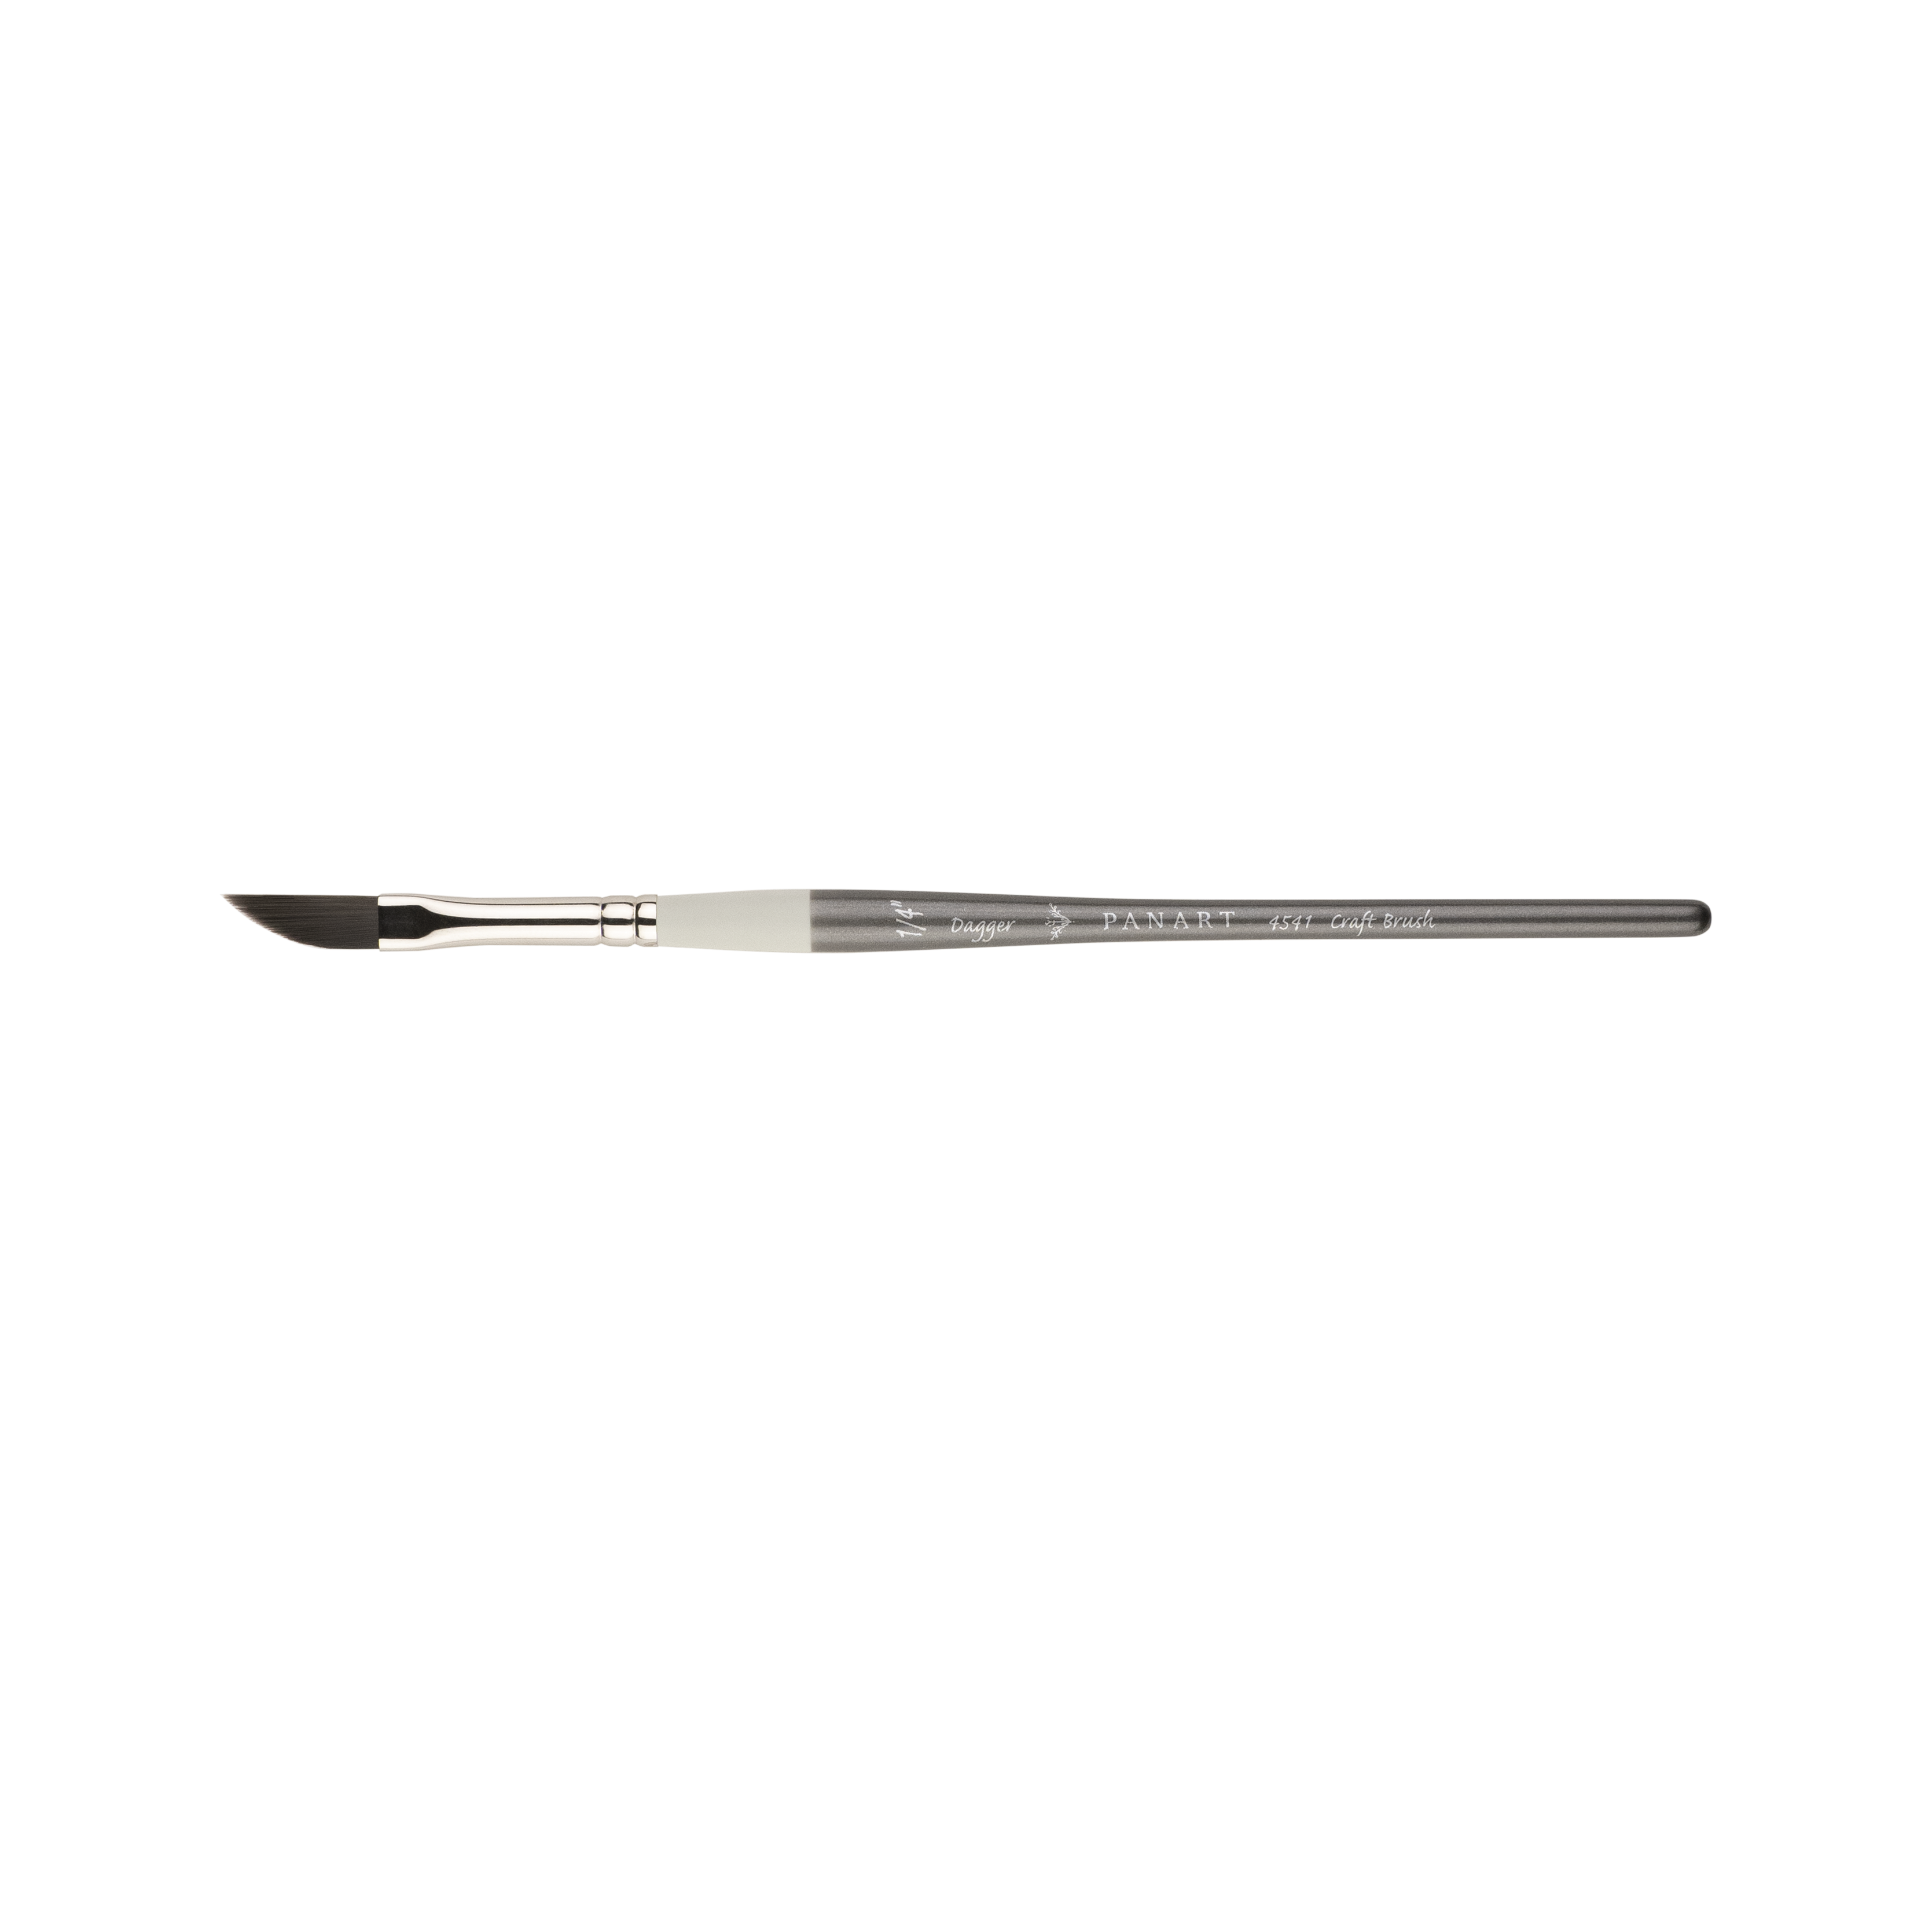 PANART Cool Craft Pinsel Dagger 4541